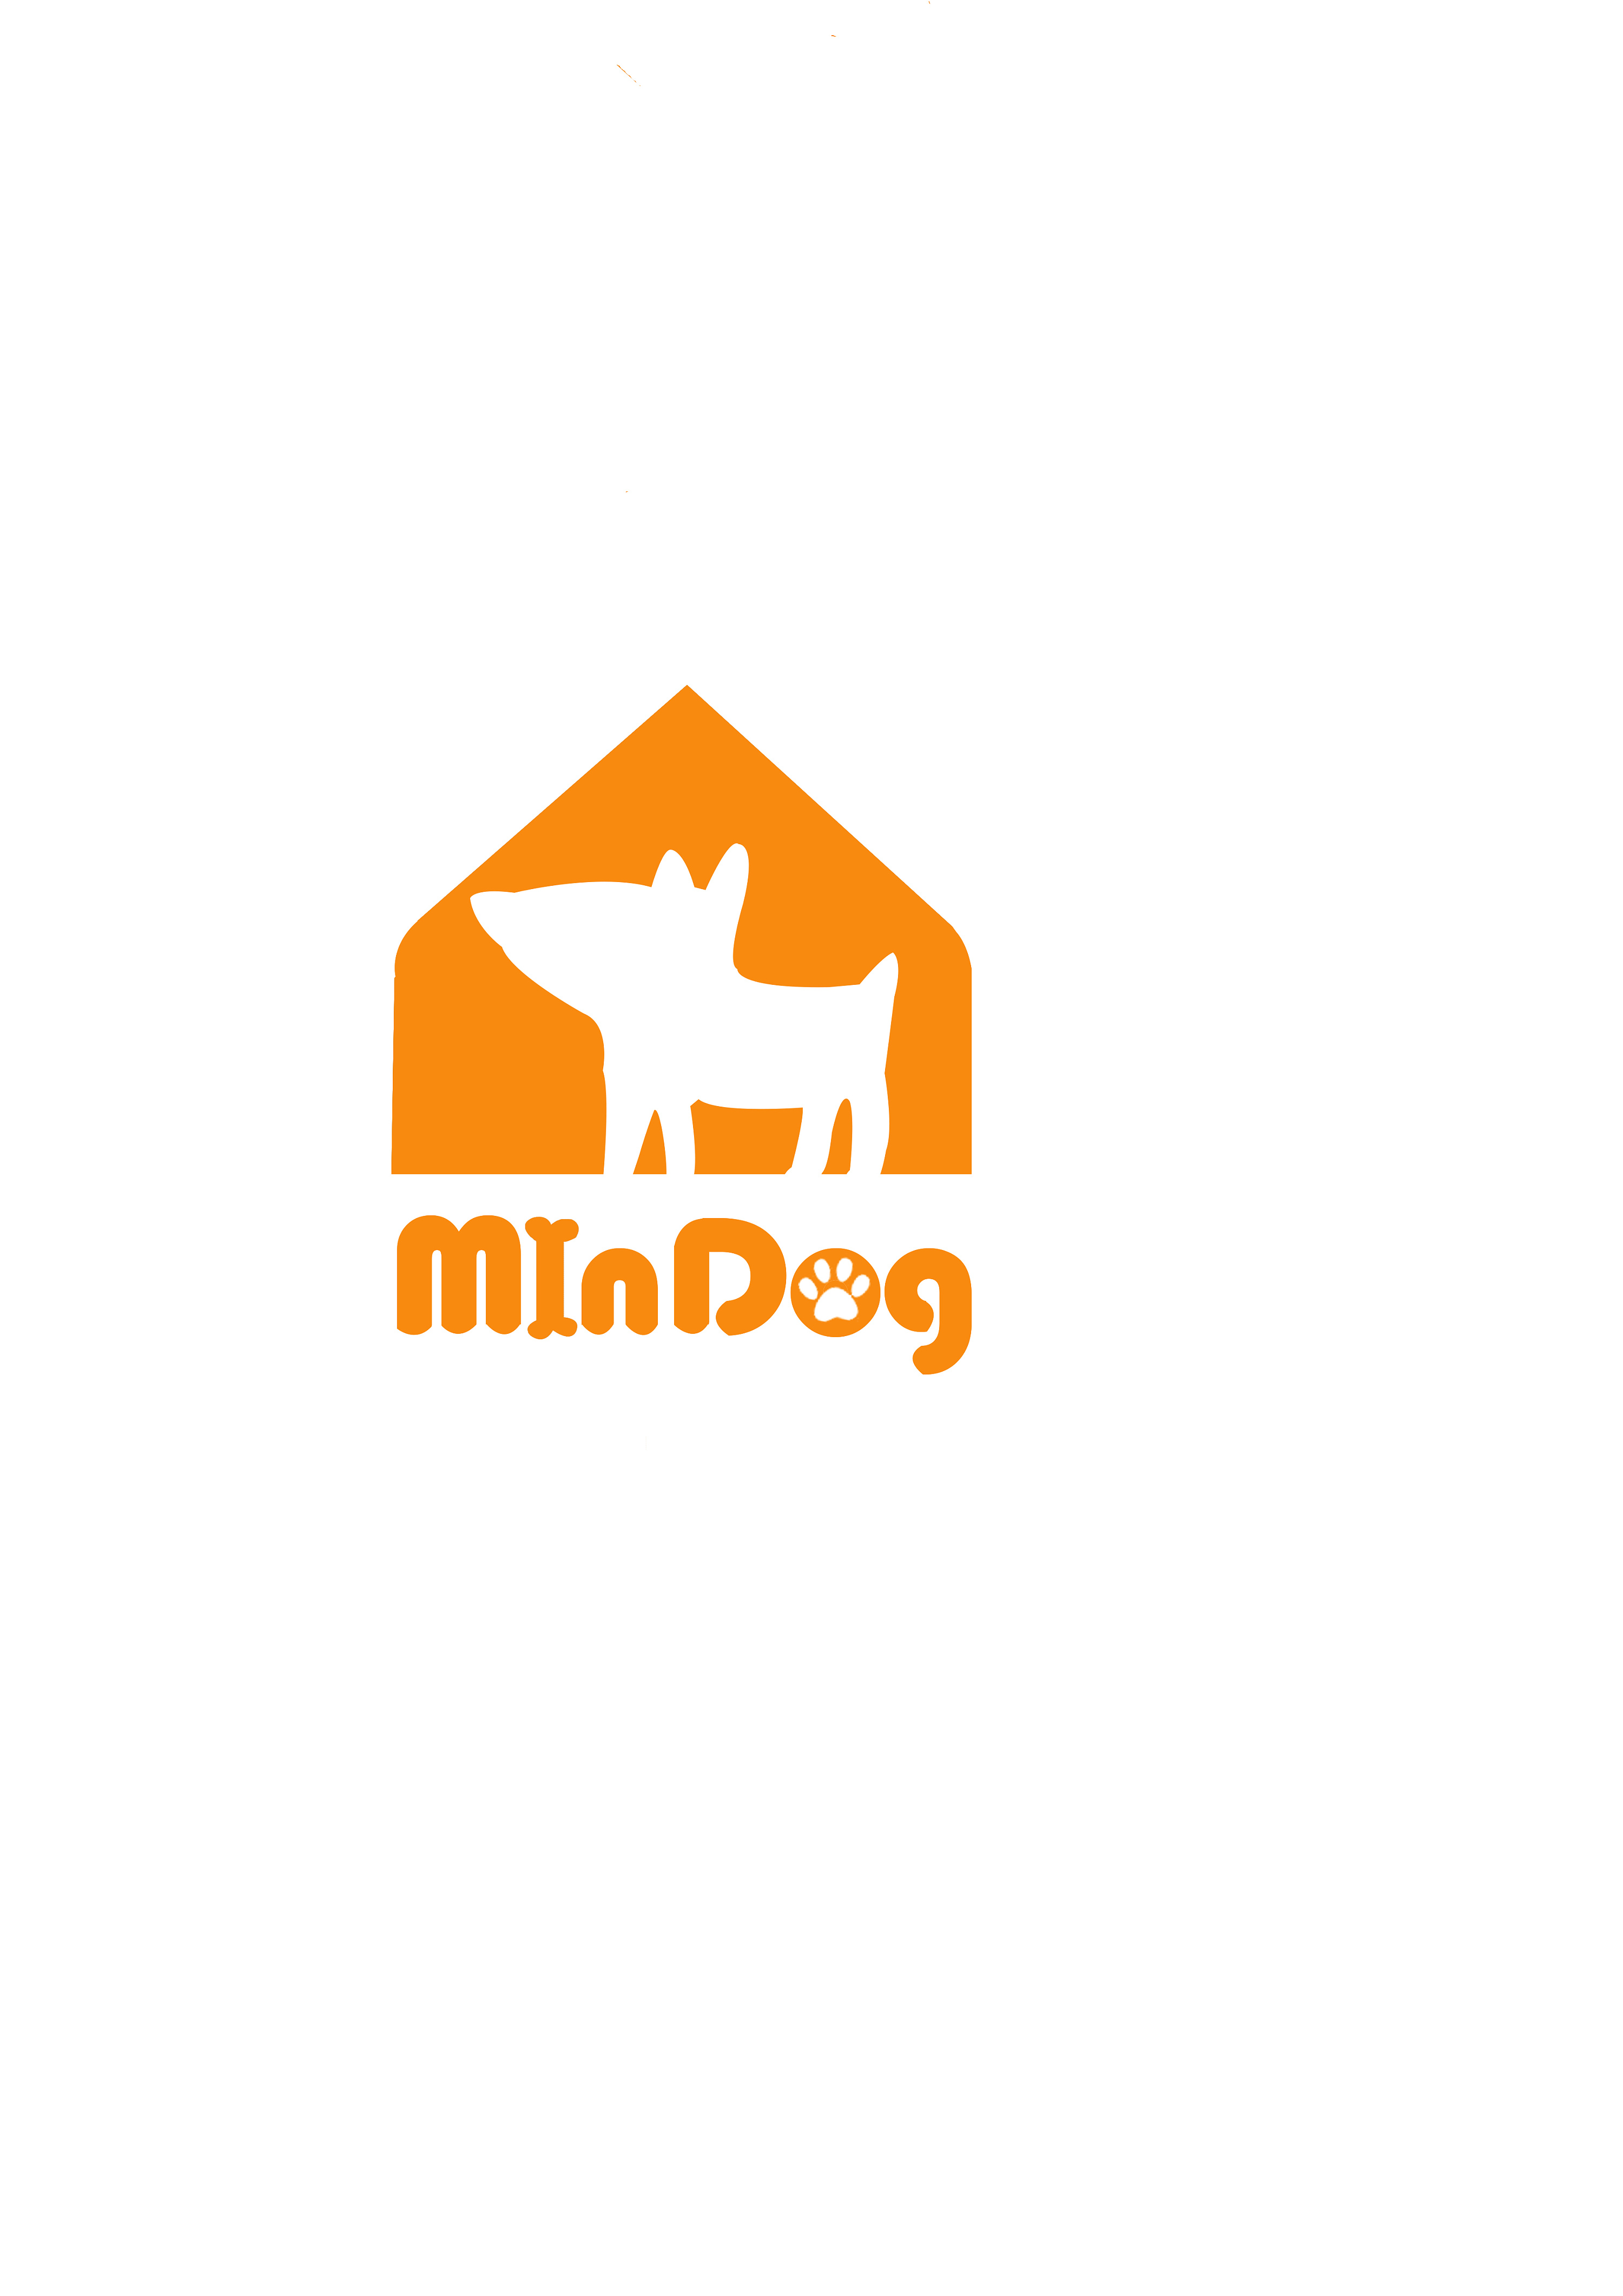 宠物店logo素材个性图片